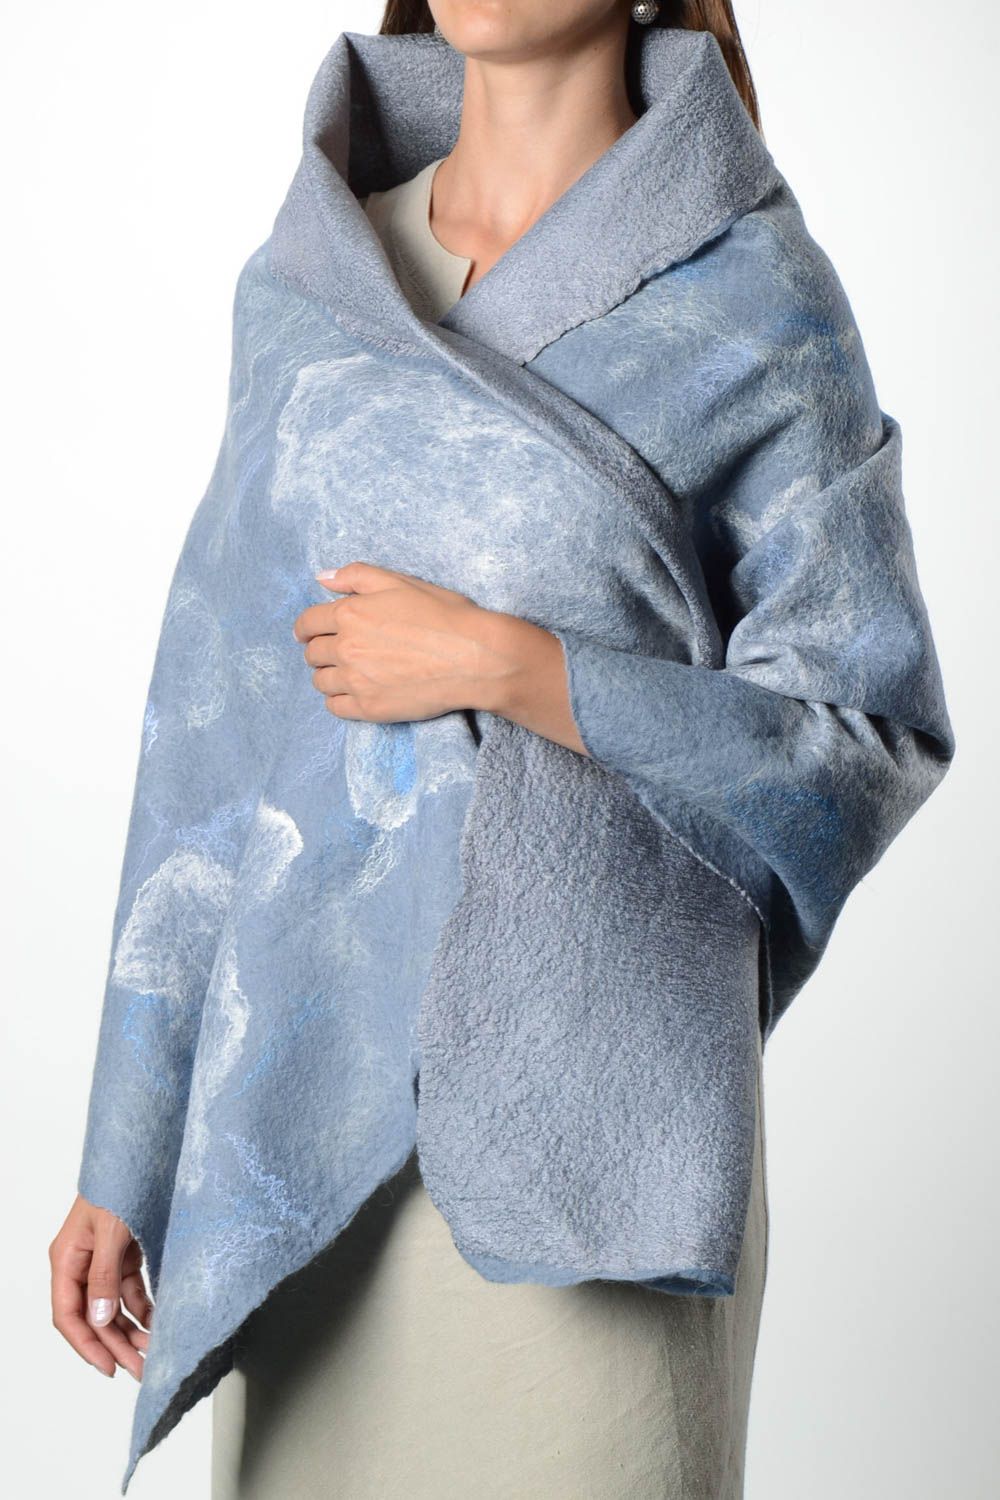 Женский шарф палантин ручной работы валяный палантин из шерсти голубой фото 1